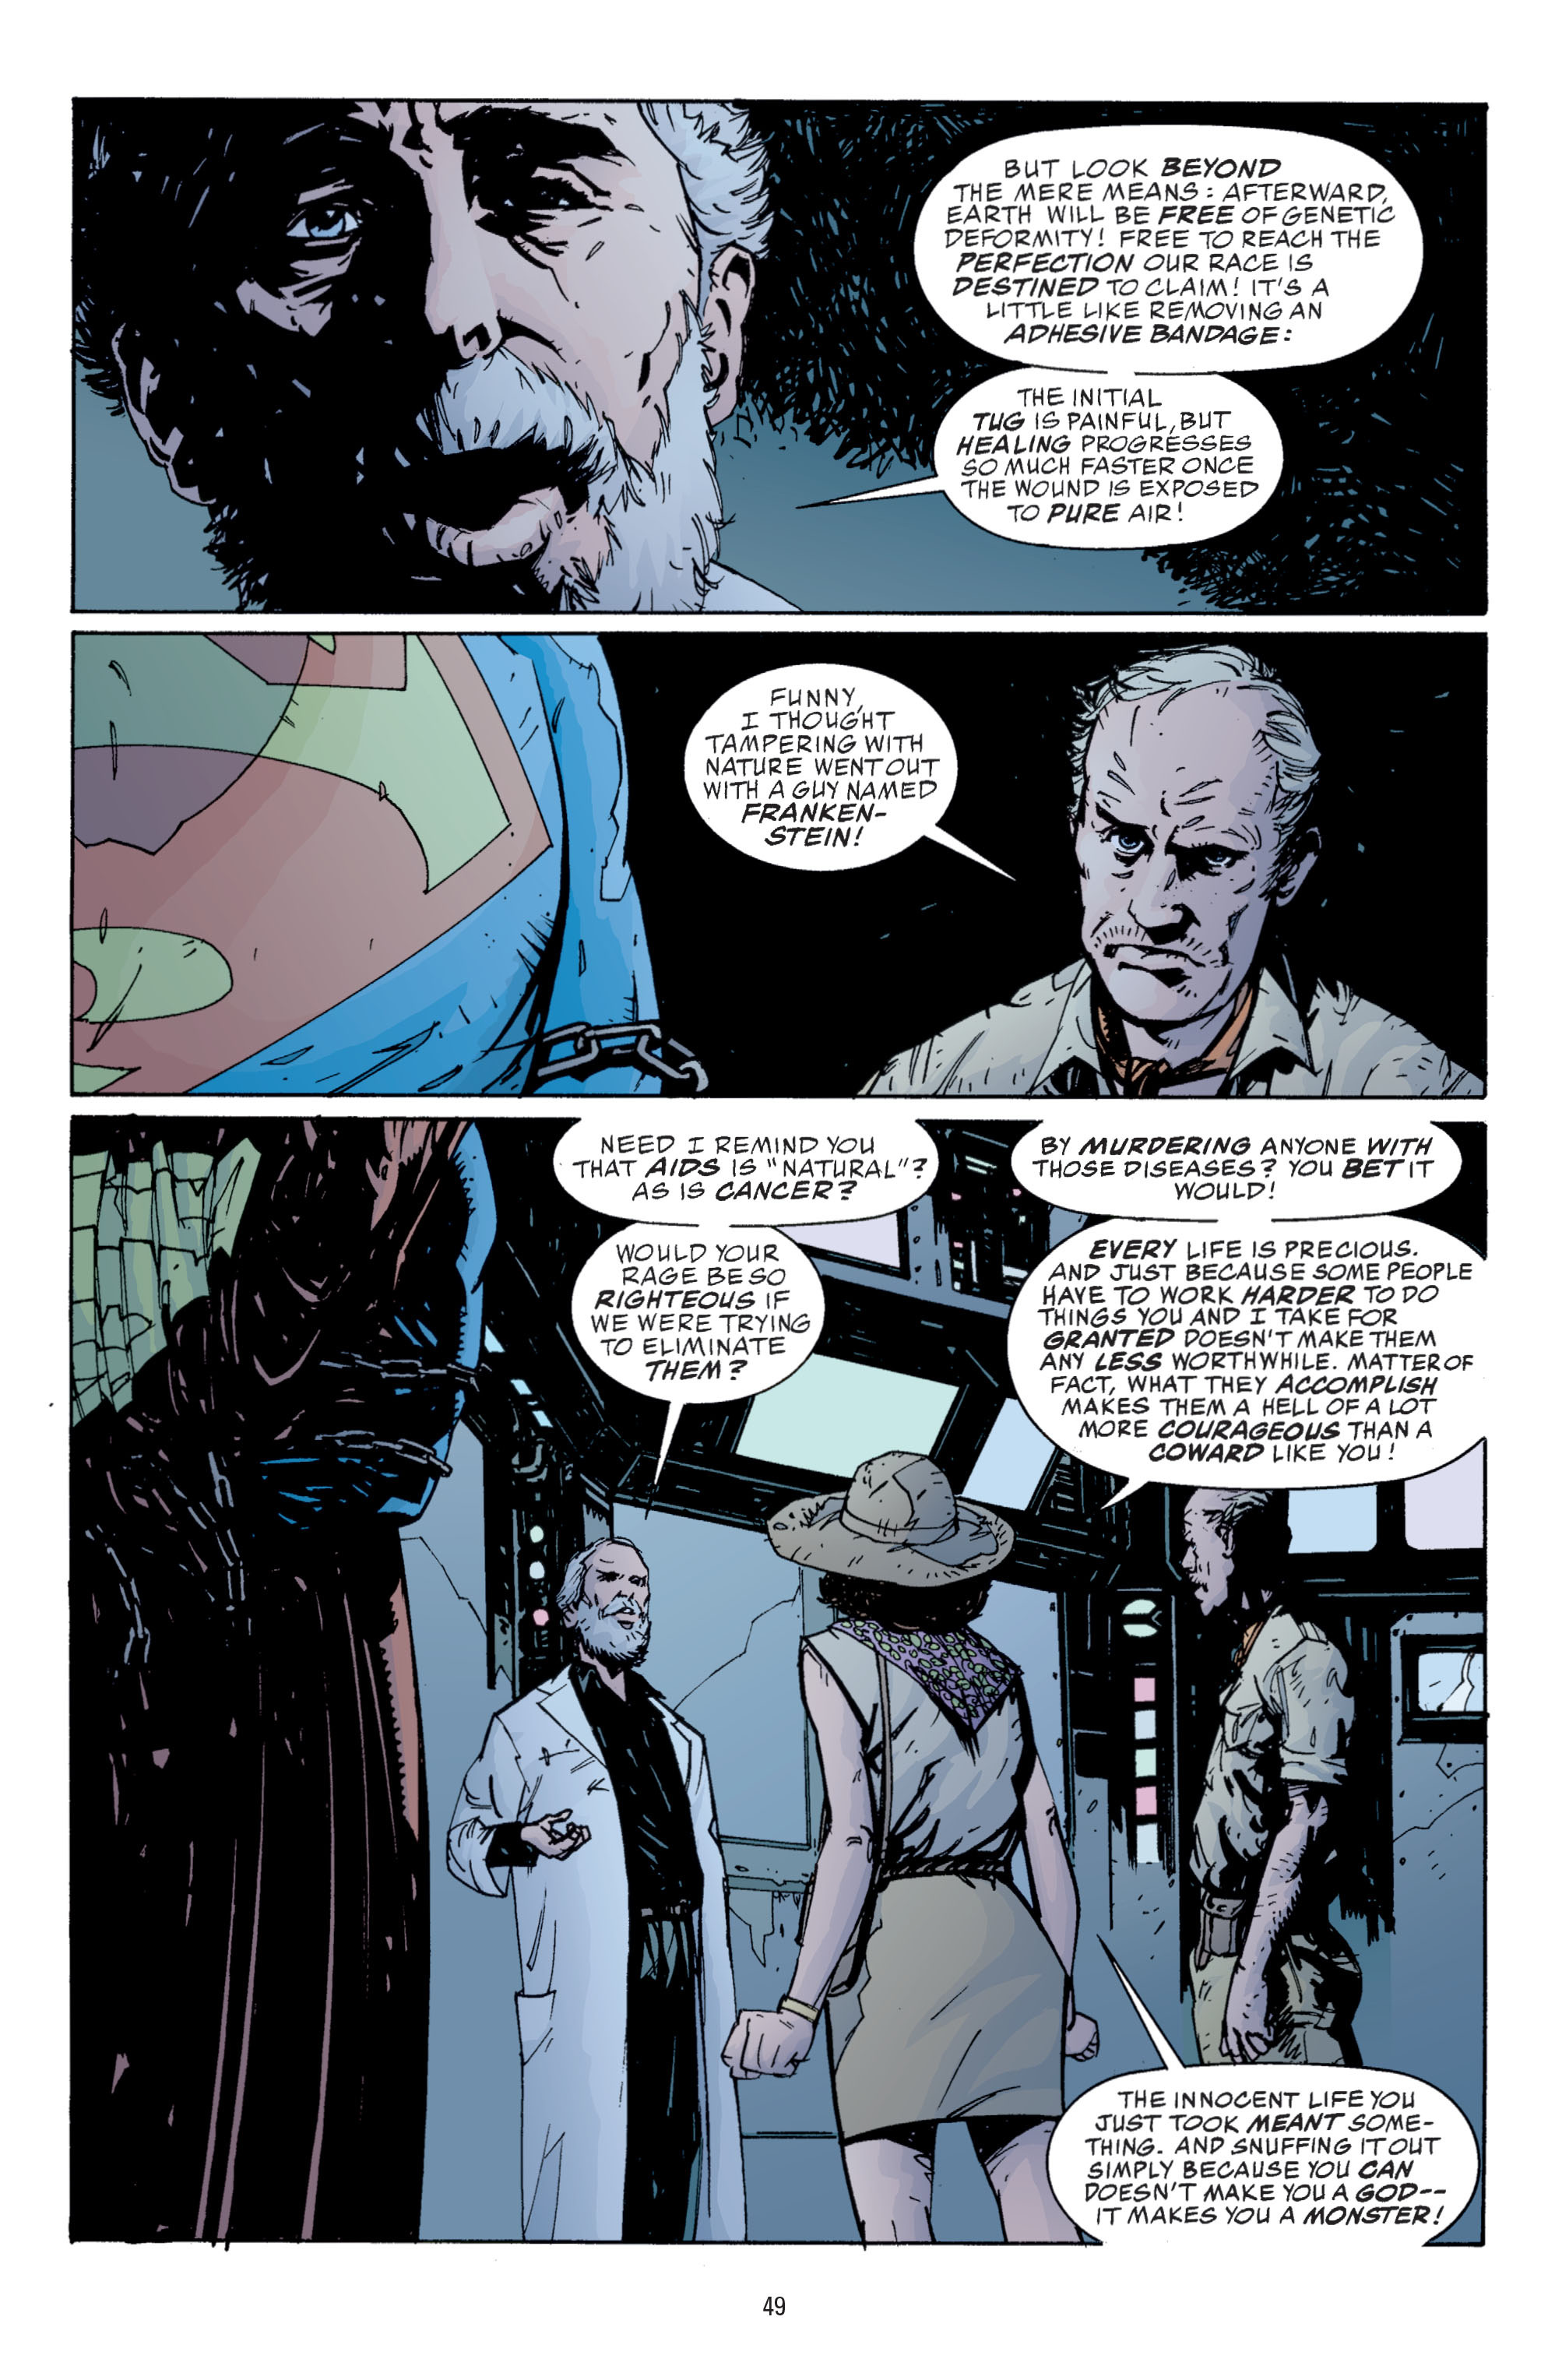 DC Comics/Dark Horse Comics: Justice League Full #1 - English 47